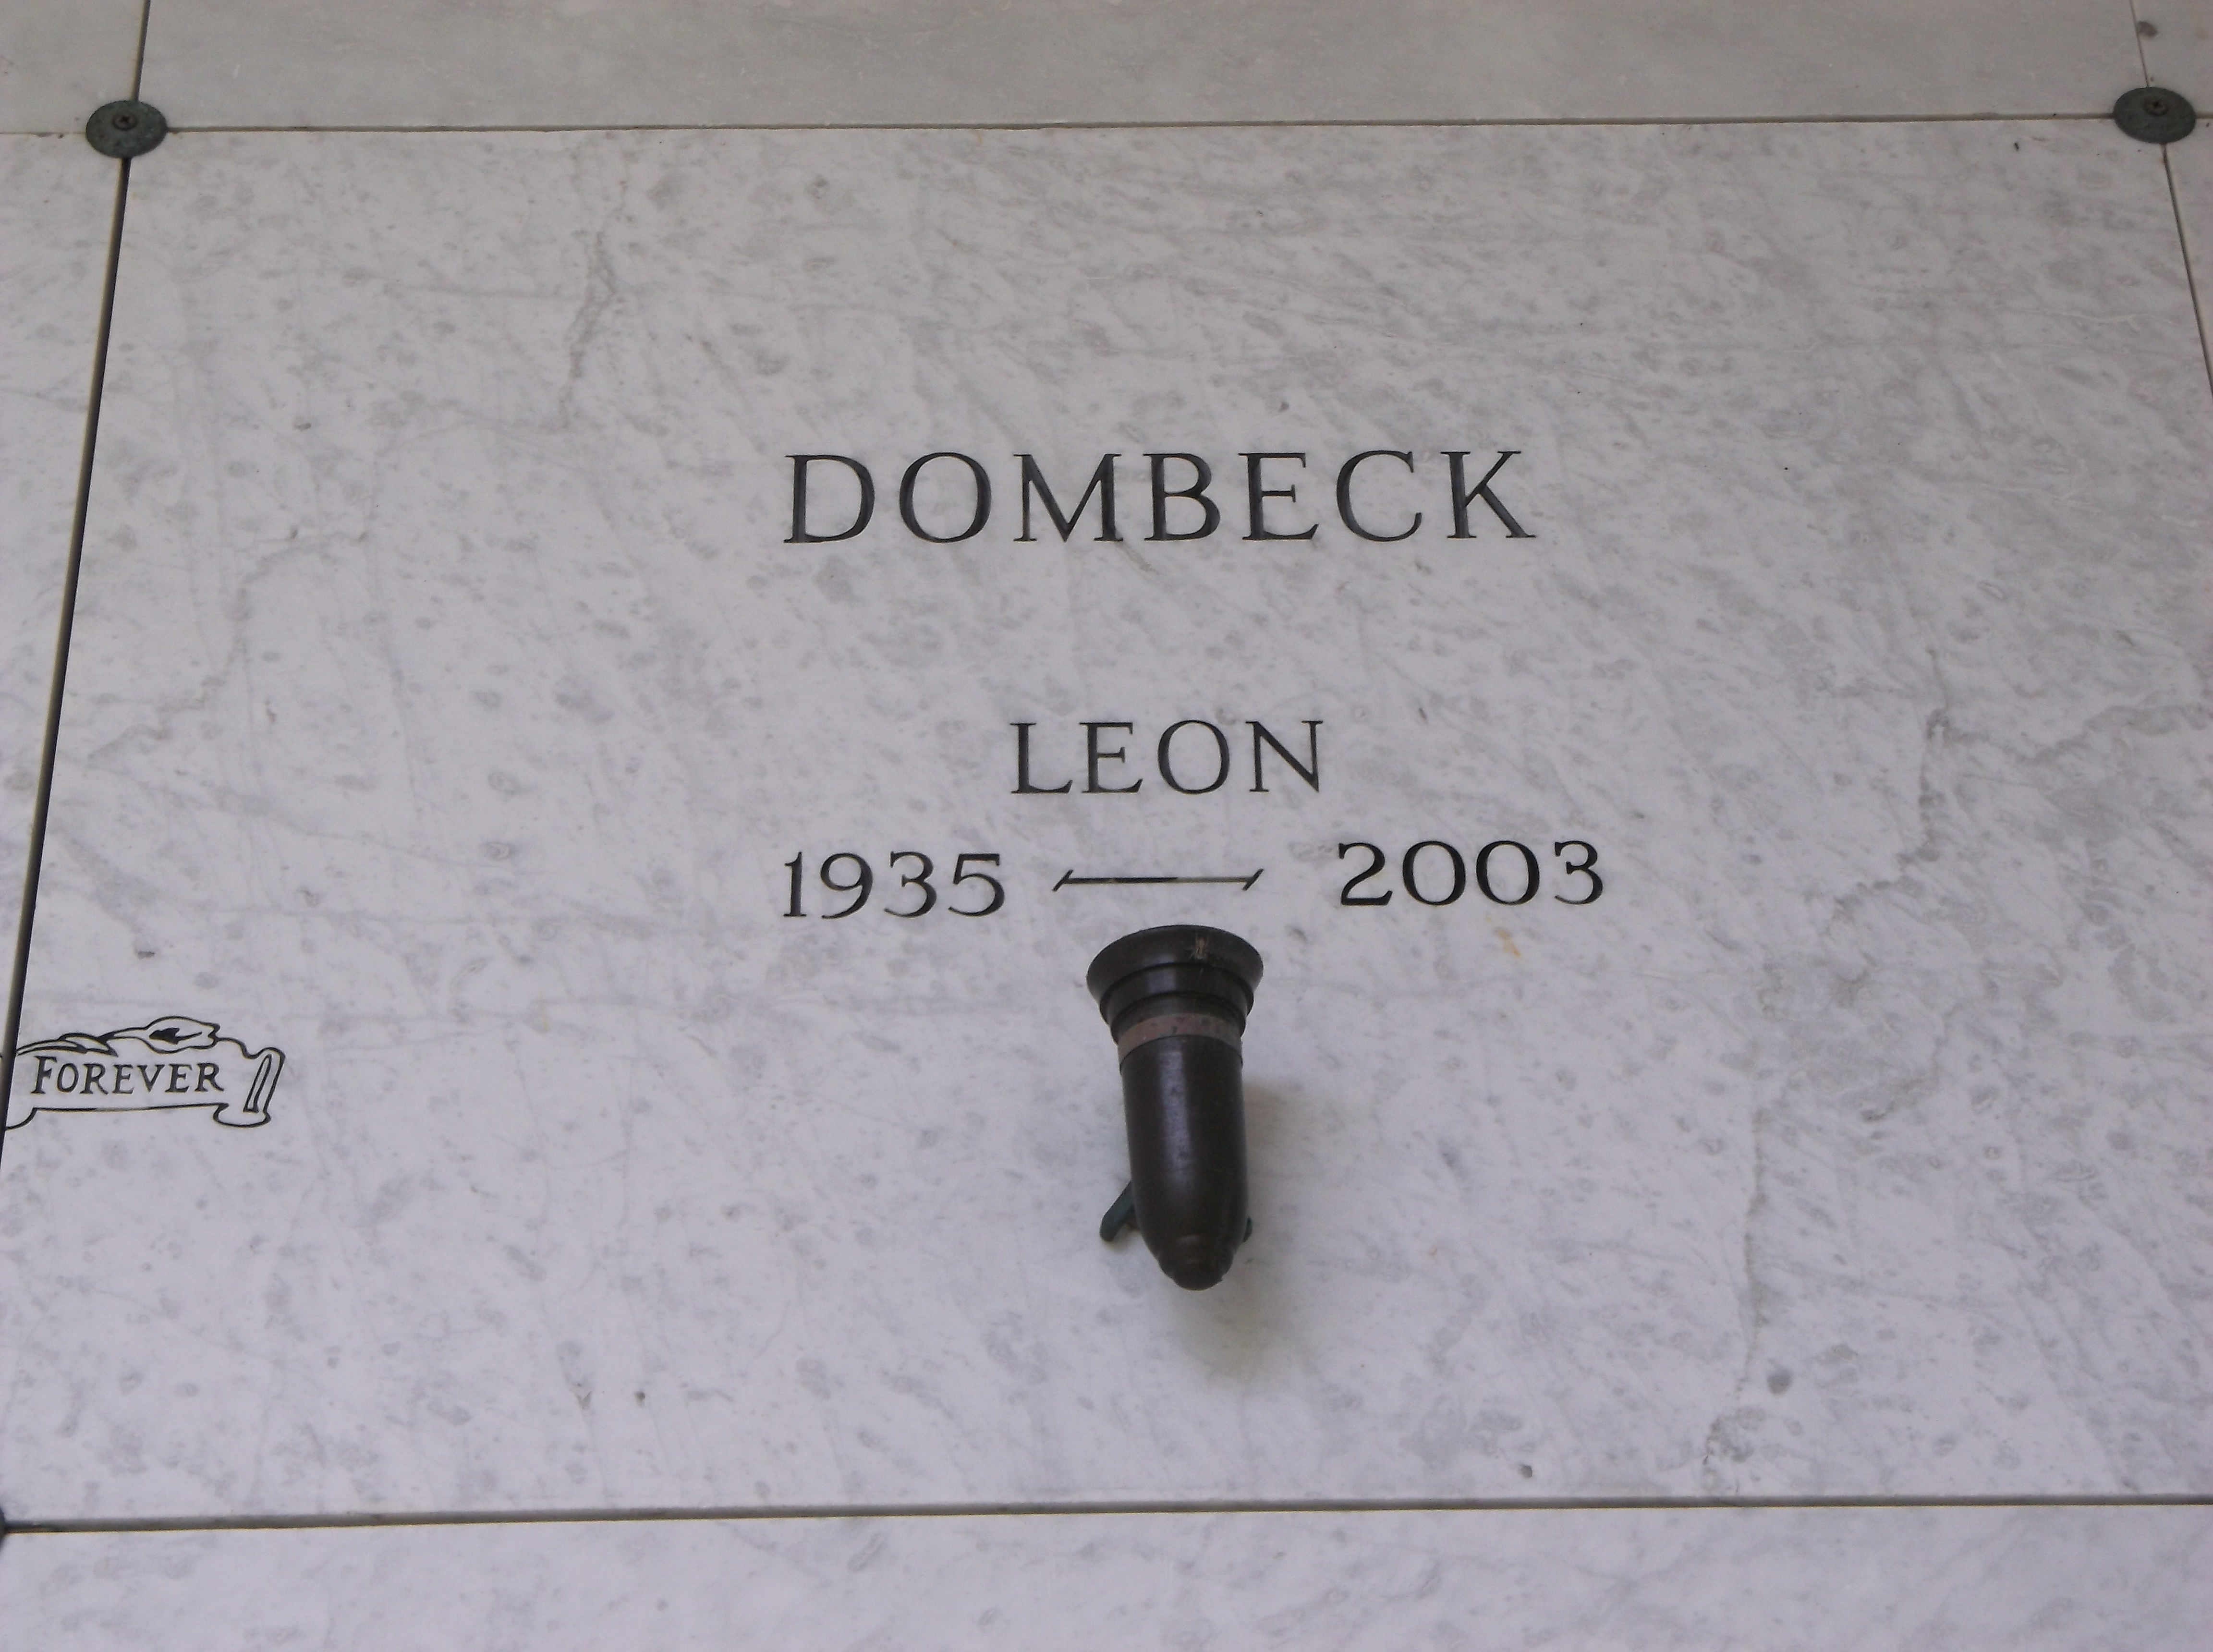 Leon Dombeck